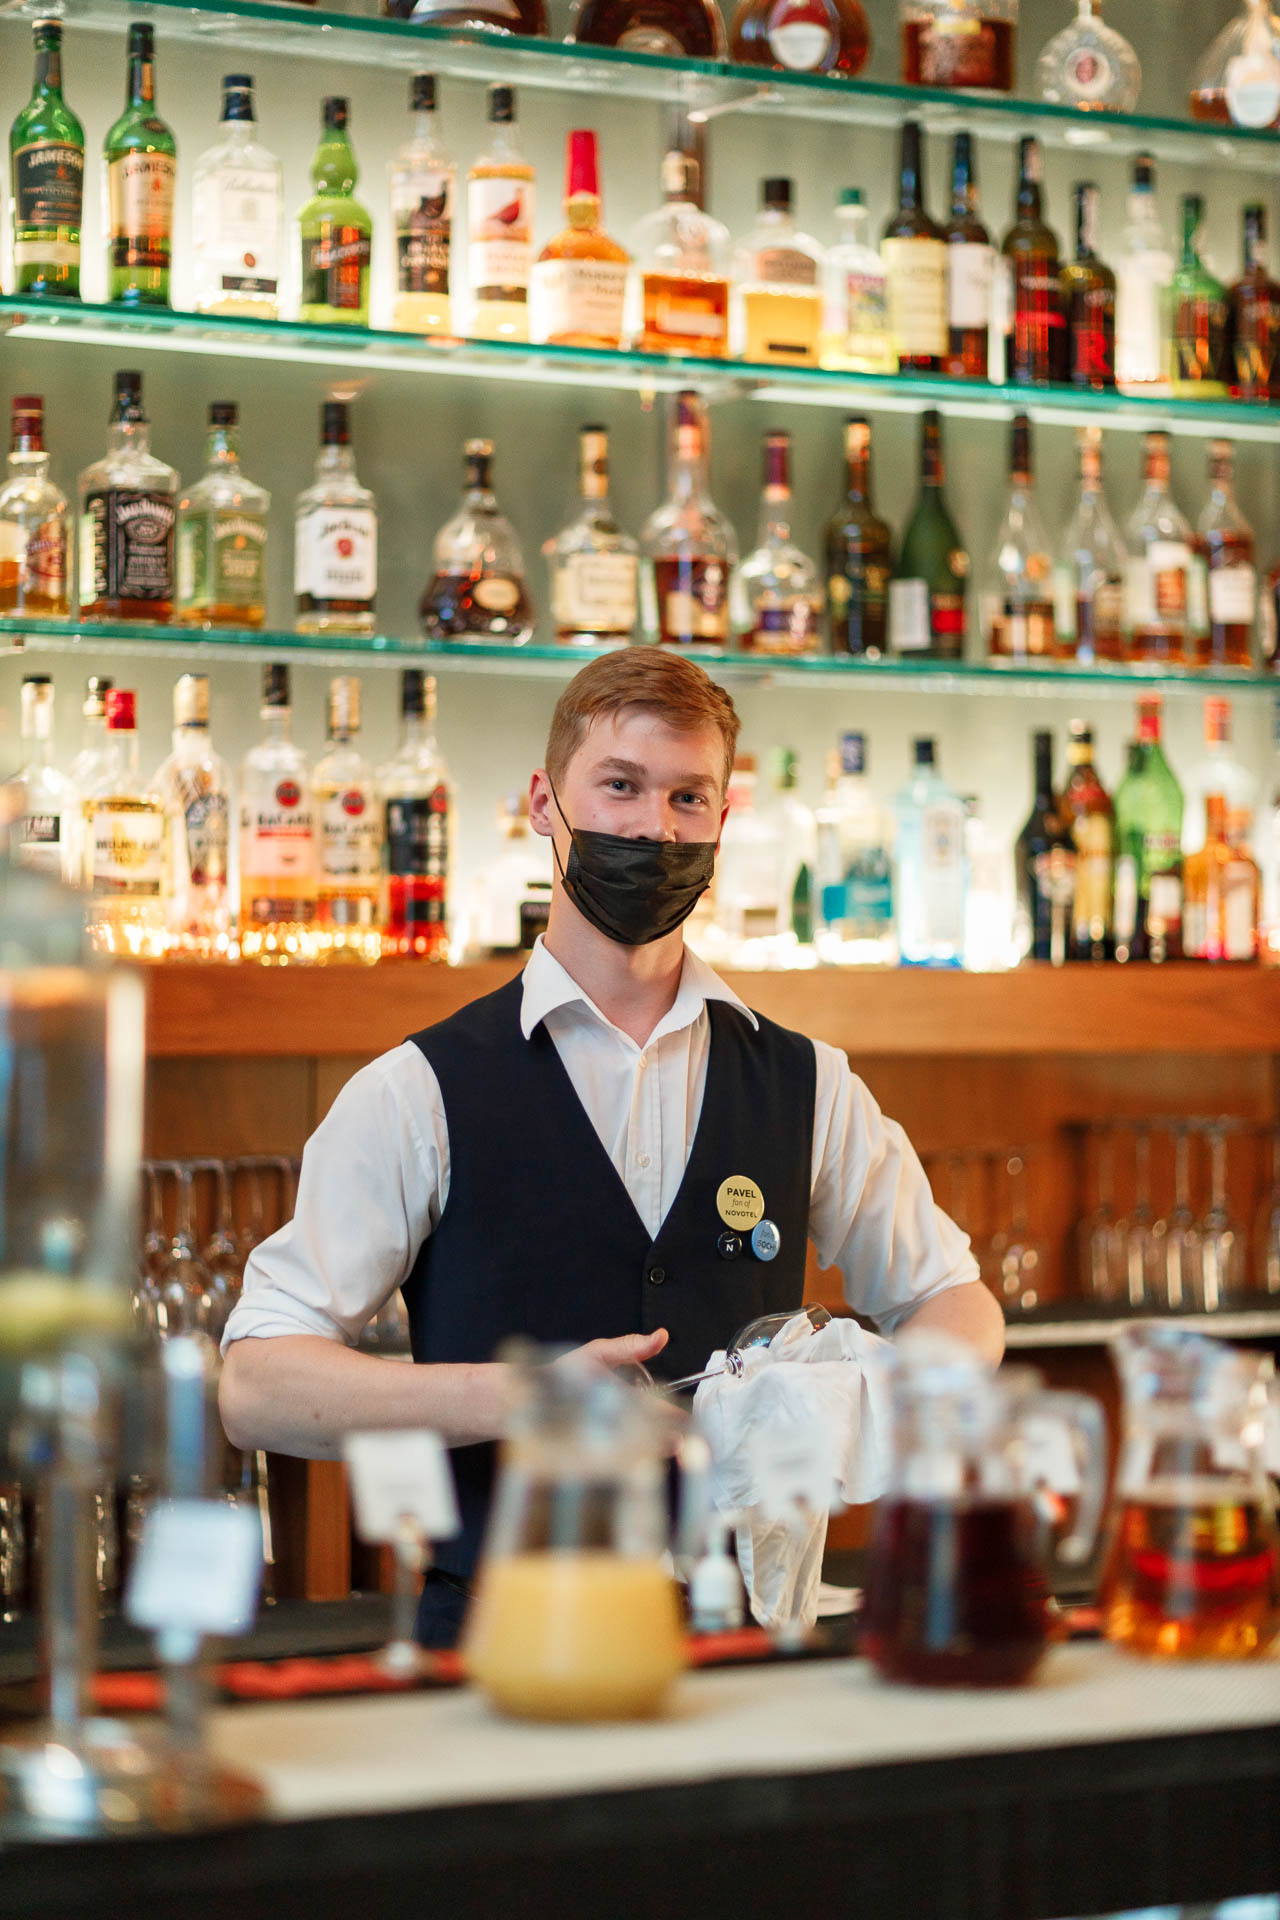 бармен в белой рубаке стоит за барной стойкой и натирает бокал перед банкетом